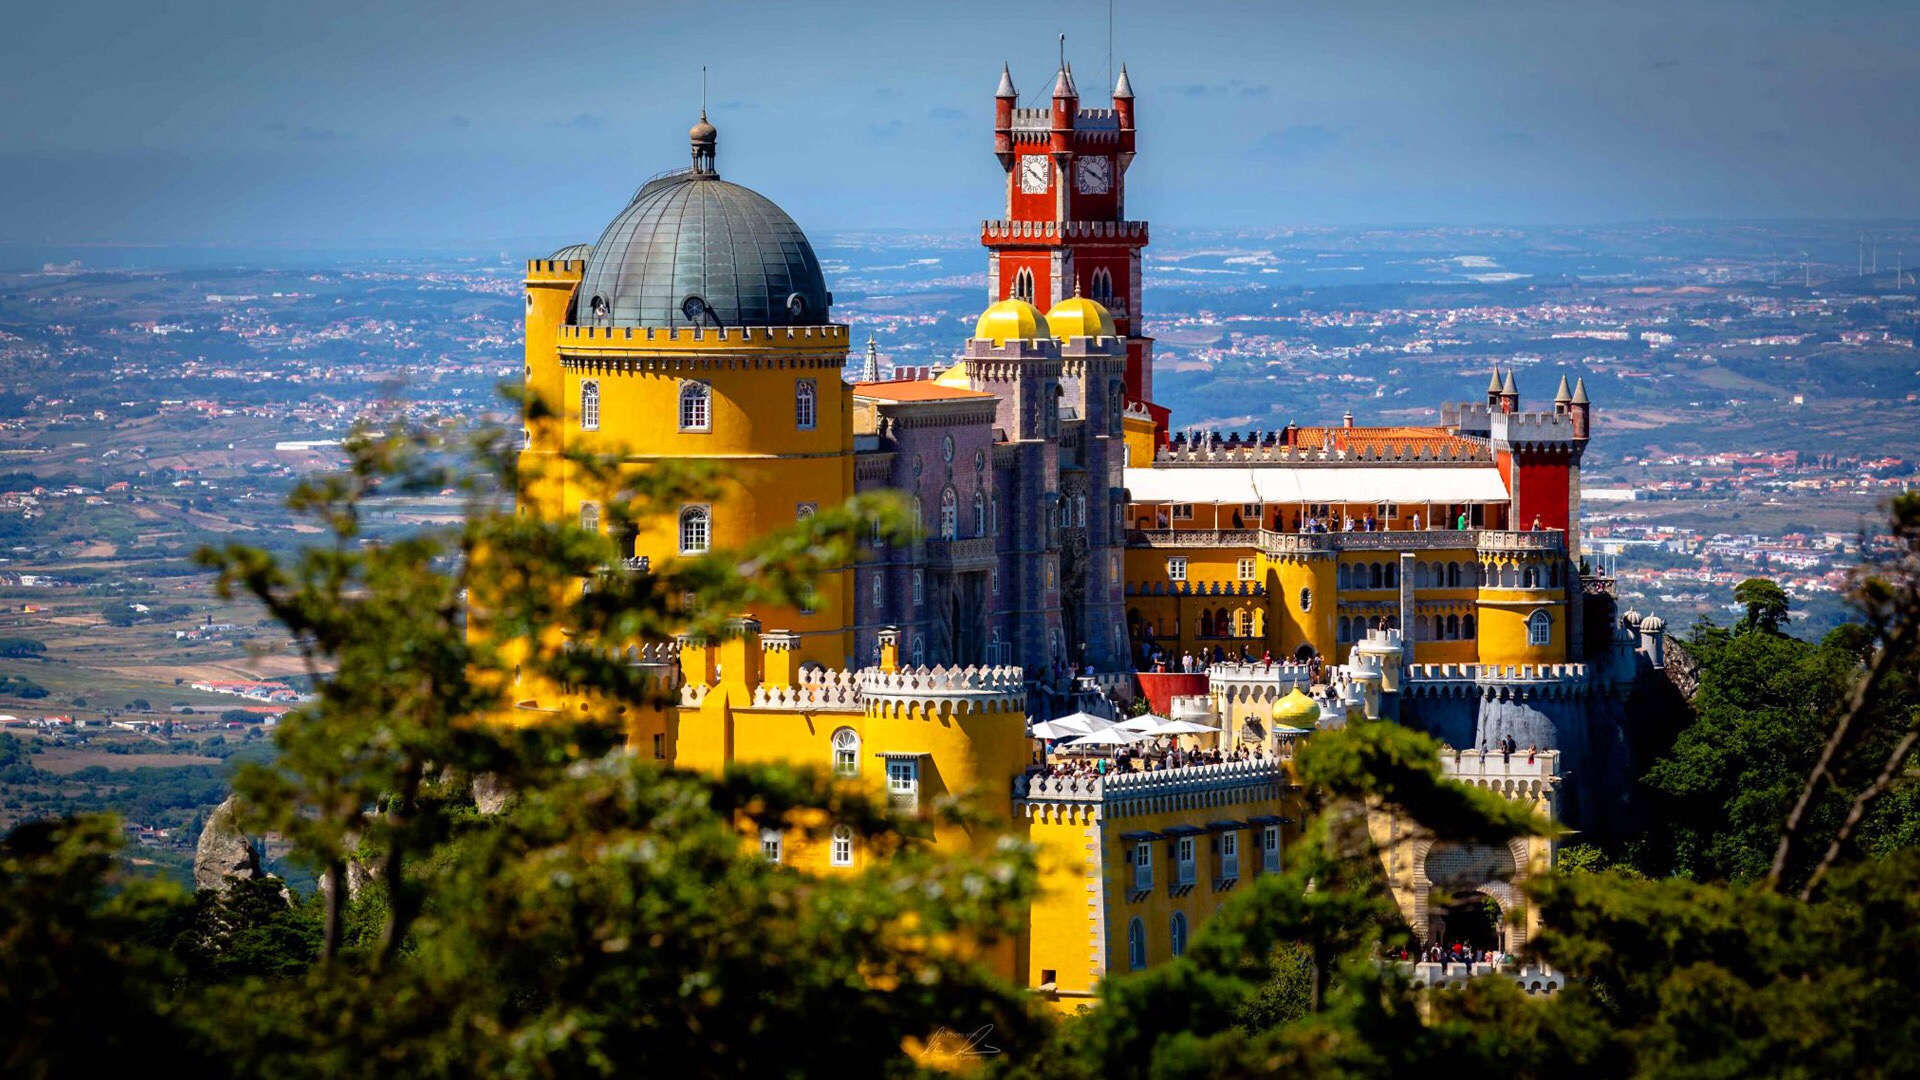 葡萄牙成人版迪斯尼乐园，山顶上的彩色城堡，每年吸引数百万游客。在葡萄牙有一座城堡被戏称为成人版迪斯尼